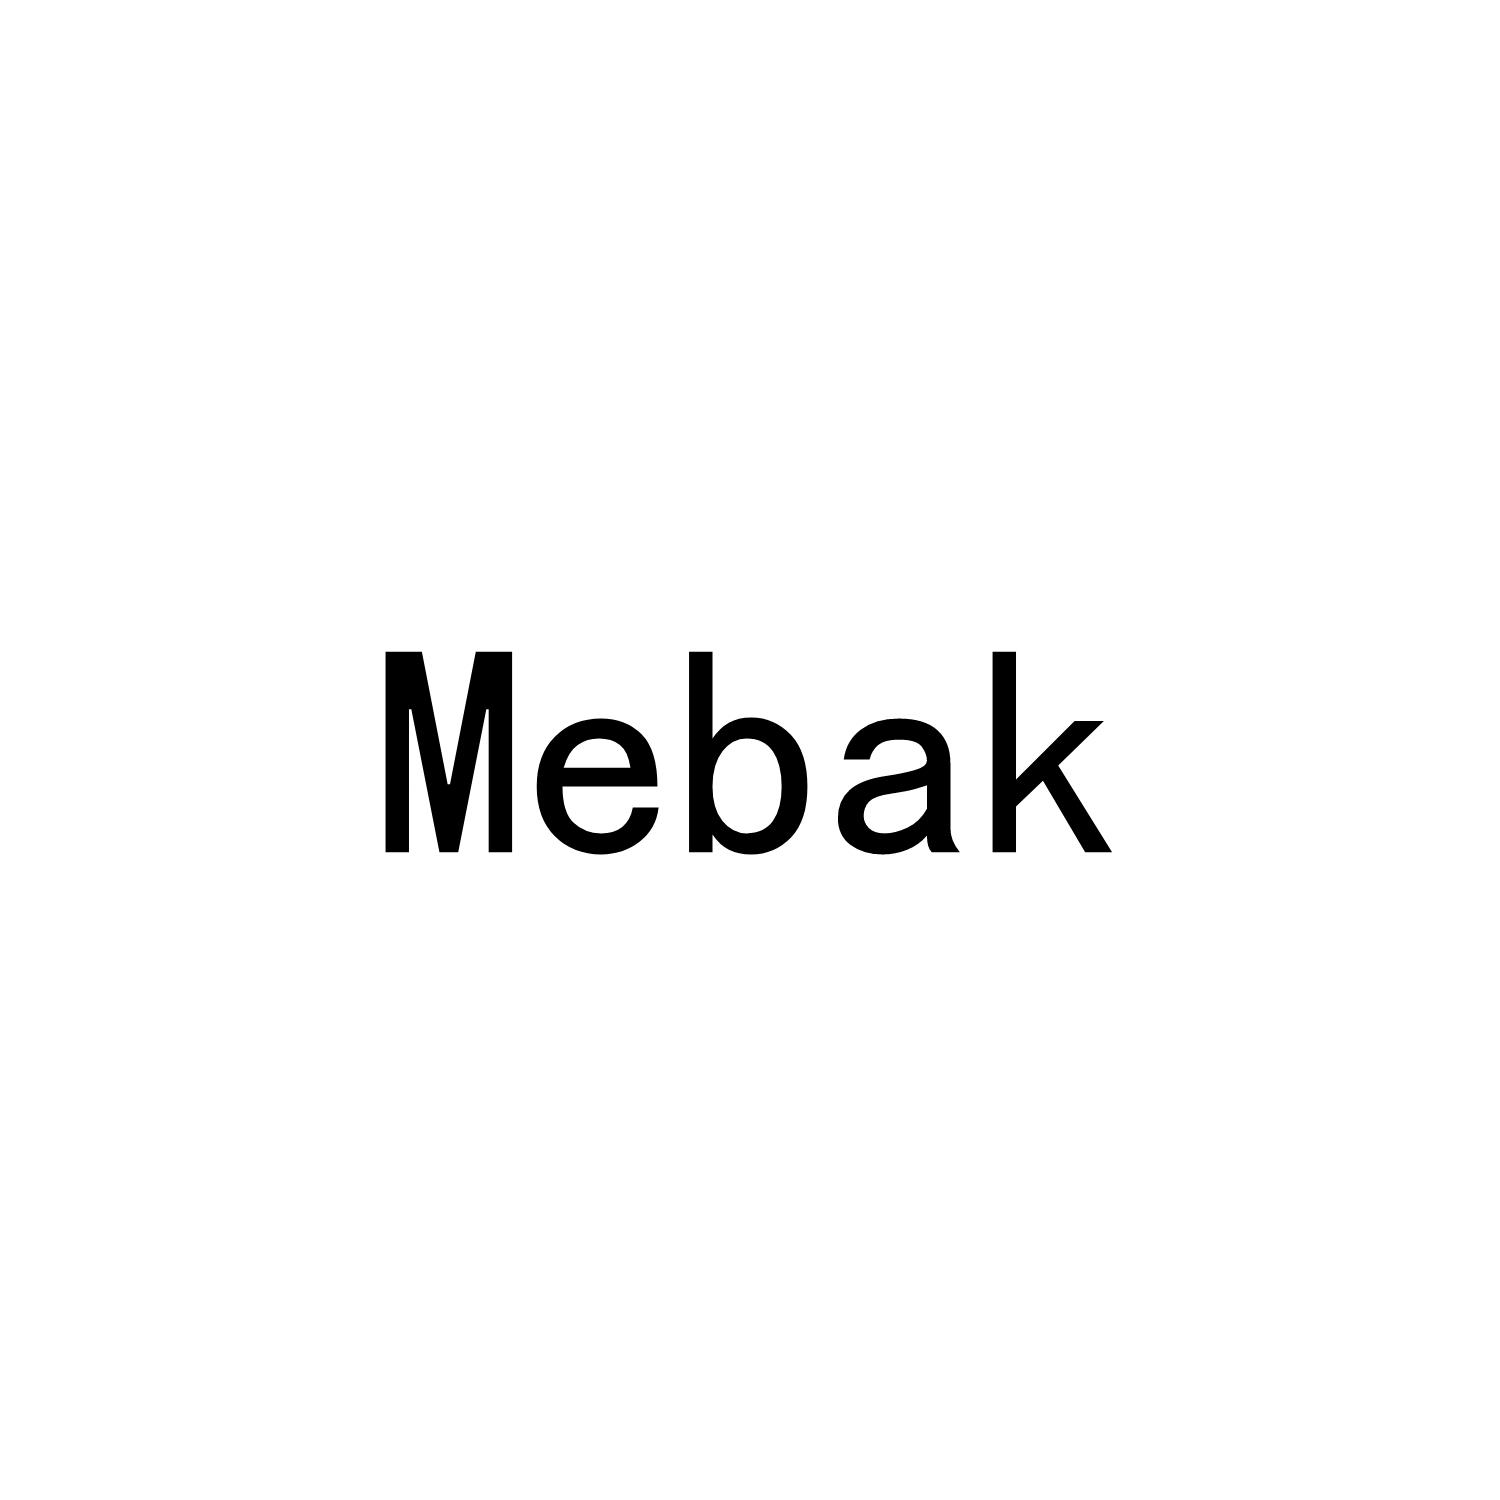 MEBAK